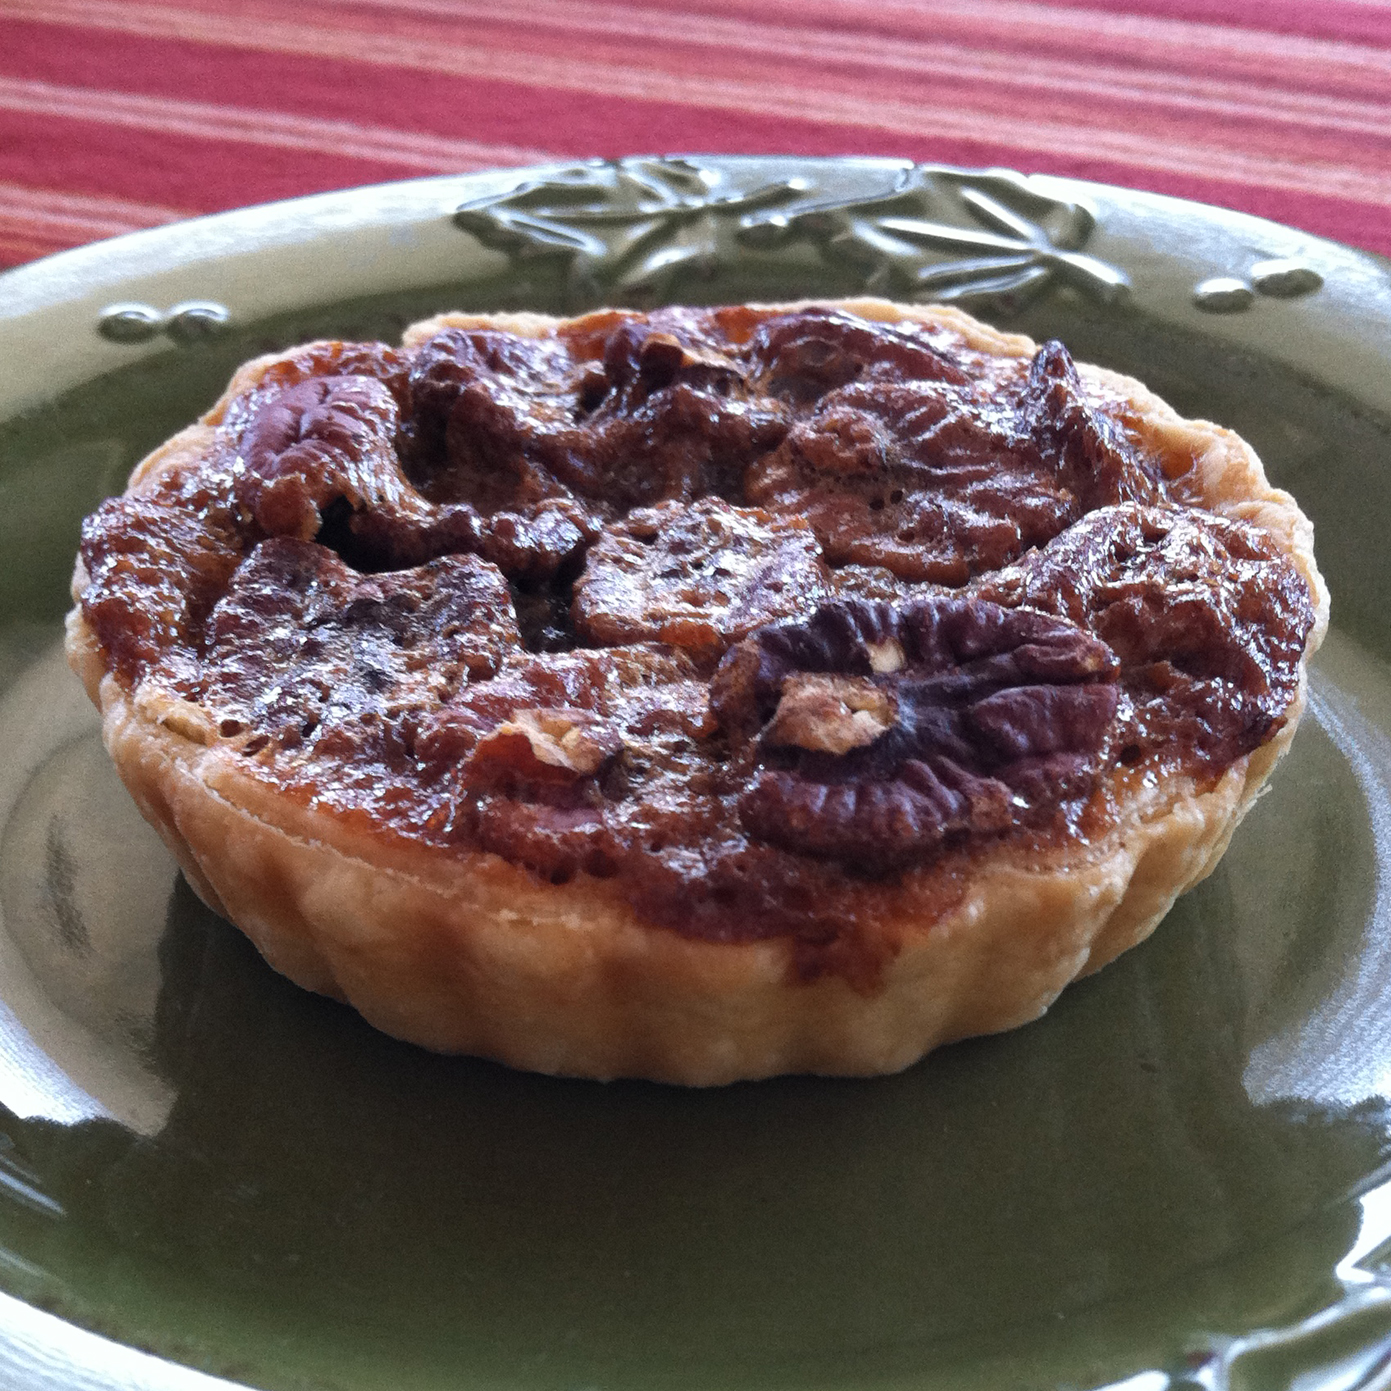 Pecan Pie Recipe Martha Stewart